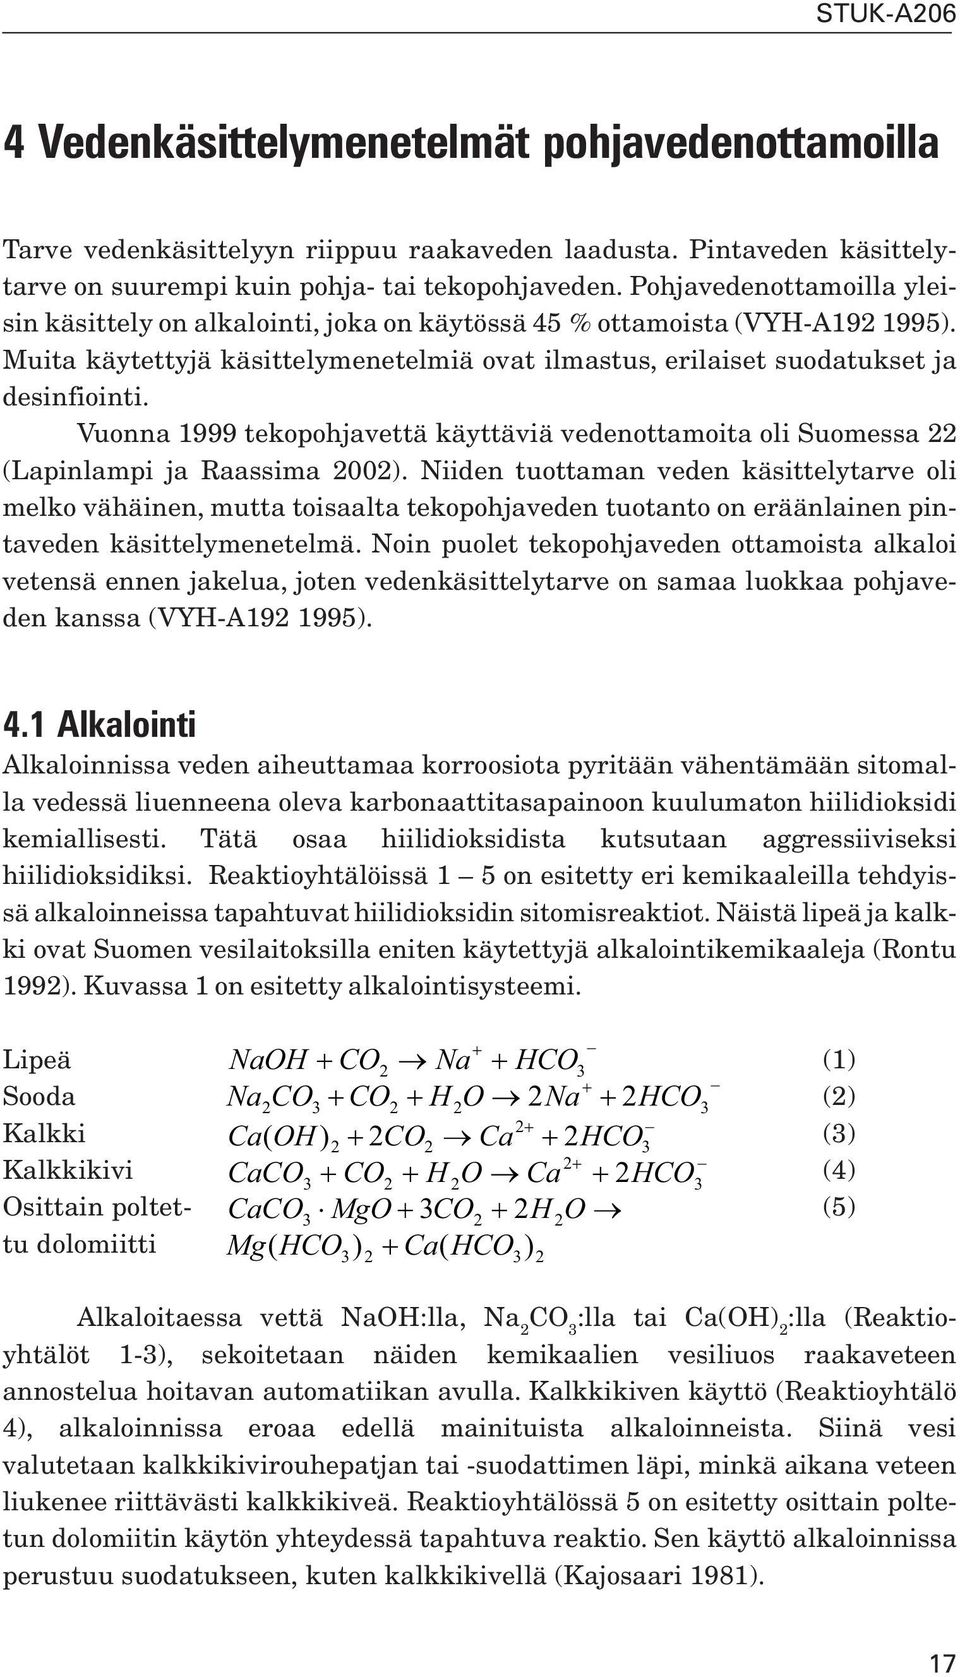 Vuonna 1999 tekopohjavettä käyttäviä vedenottamoita oli Suomessa 22 (Lapinlampi ja Raassima 2002).